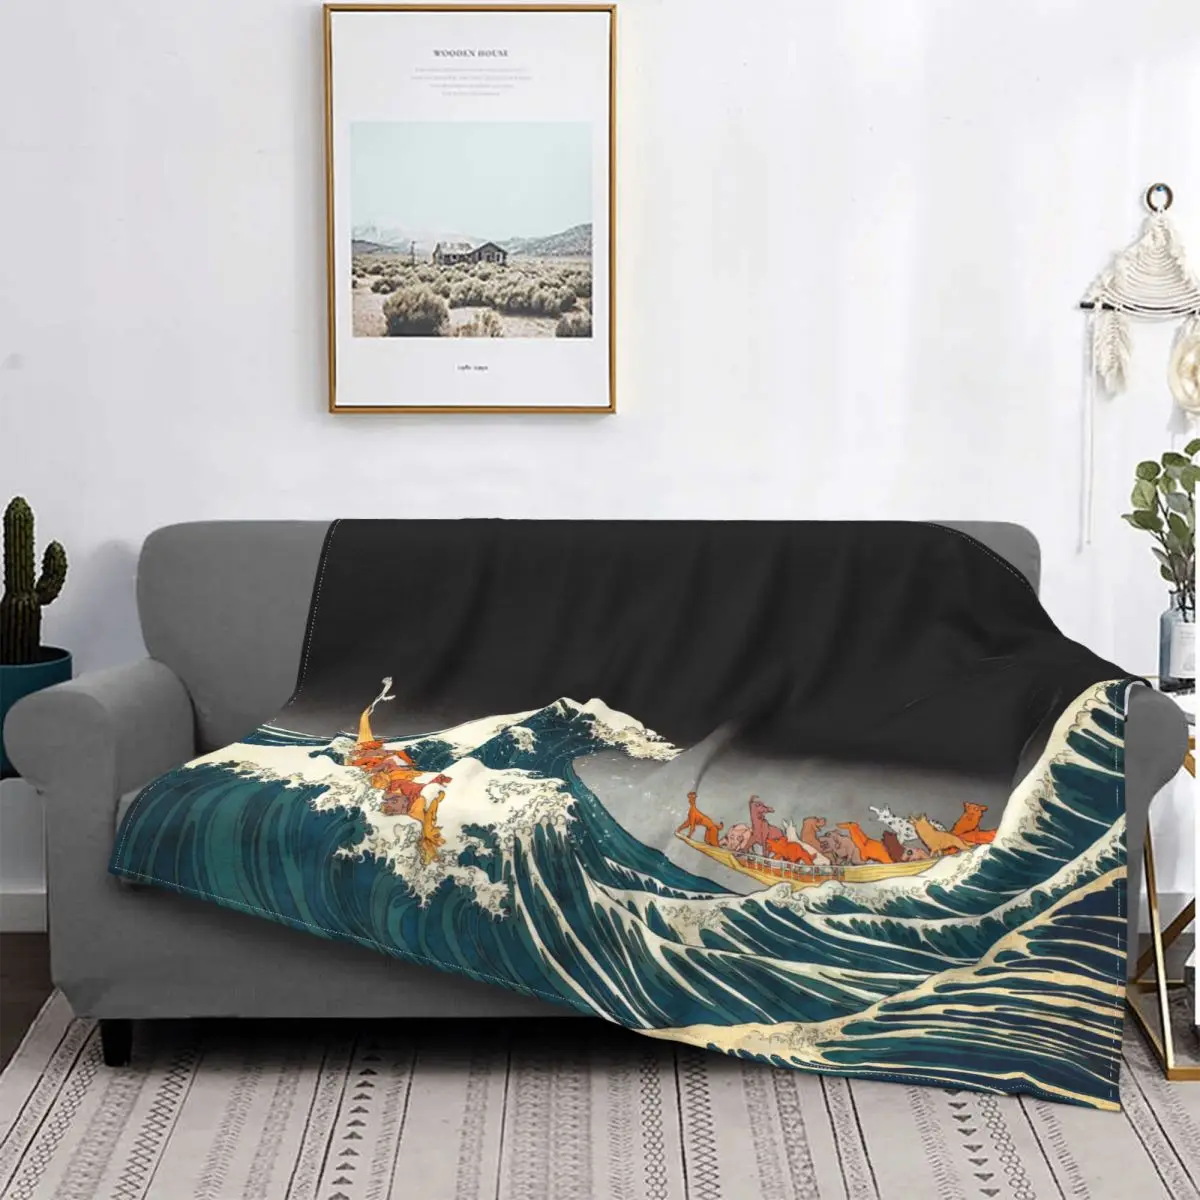 

Японское одеяло Kanagawa для серфинга коралловый флис плюшевое осенне-зимнее портативное очень теплое покрывало для Кровати Покрывало для ули...